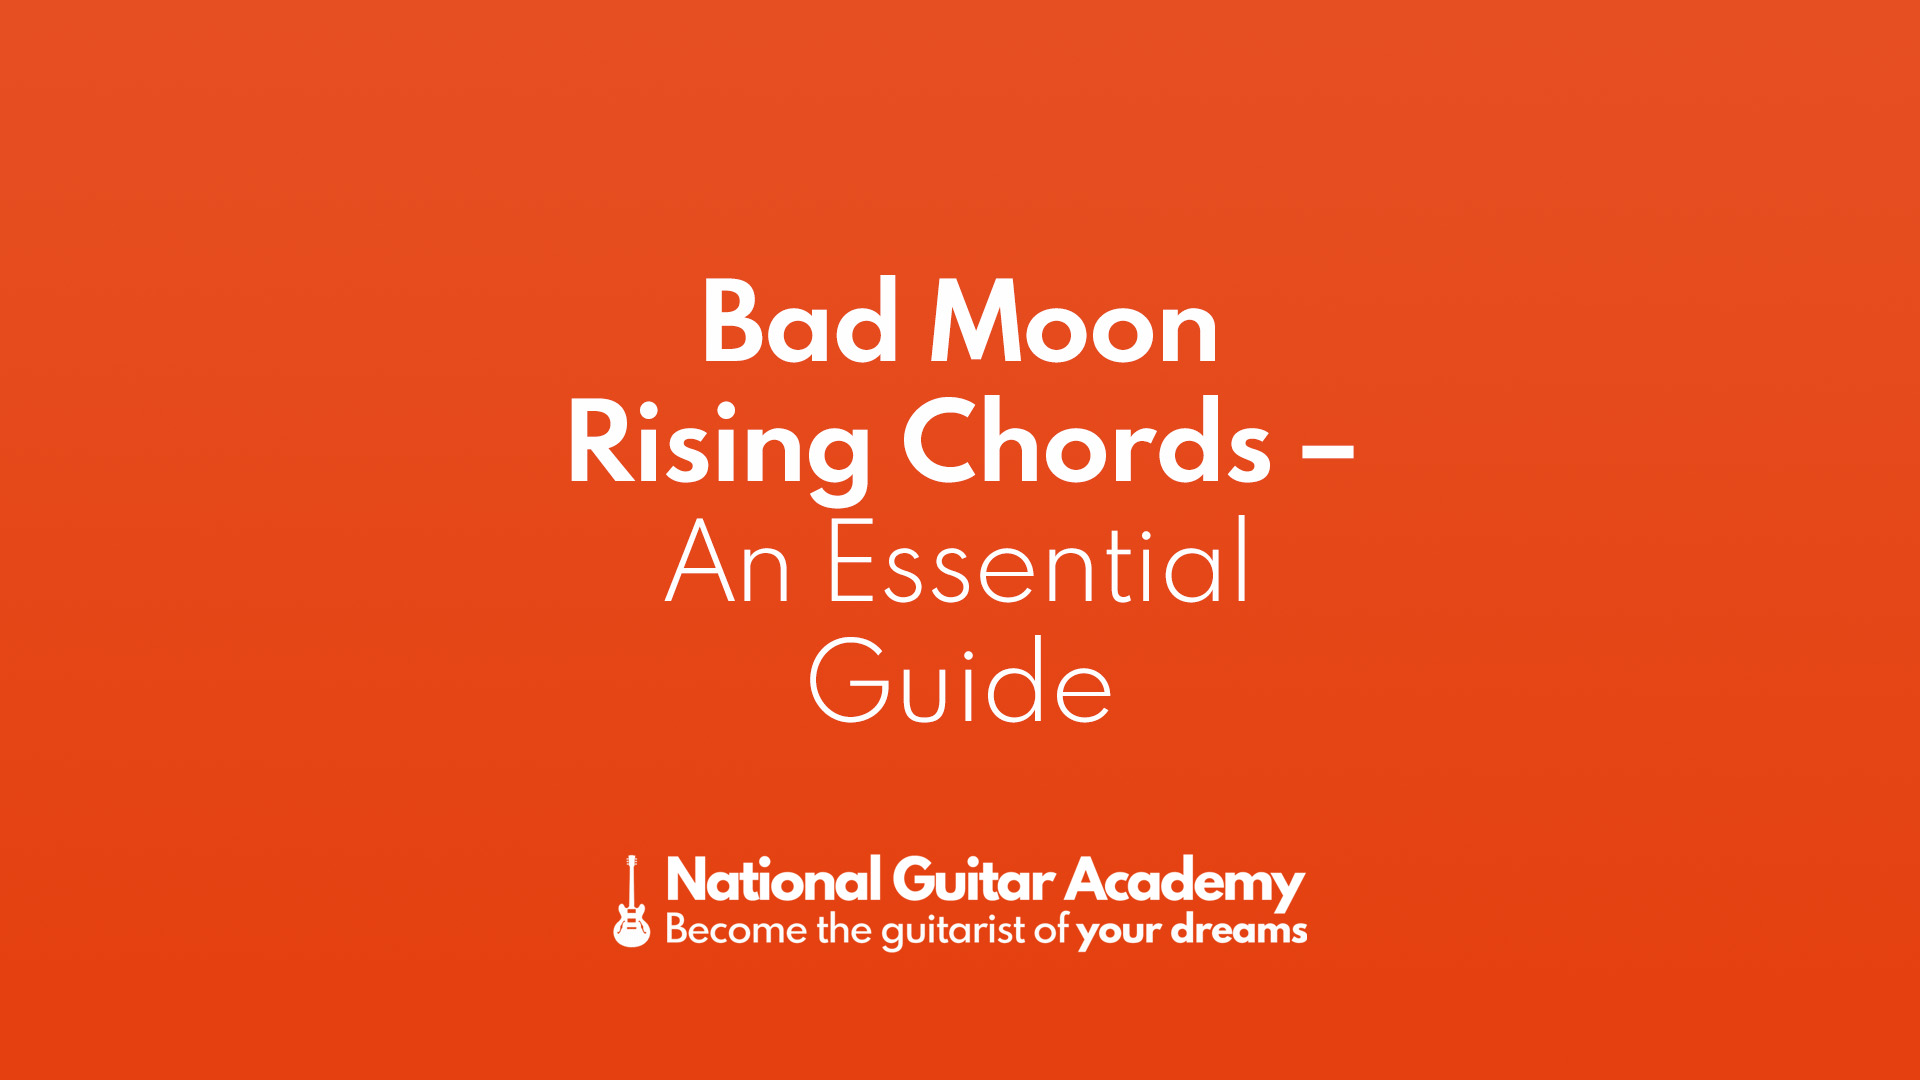 Bad moon rising chords strumming